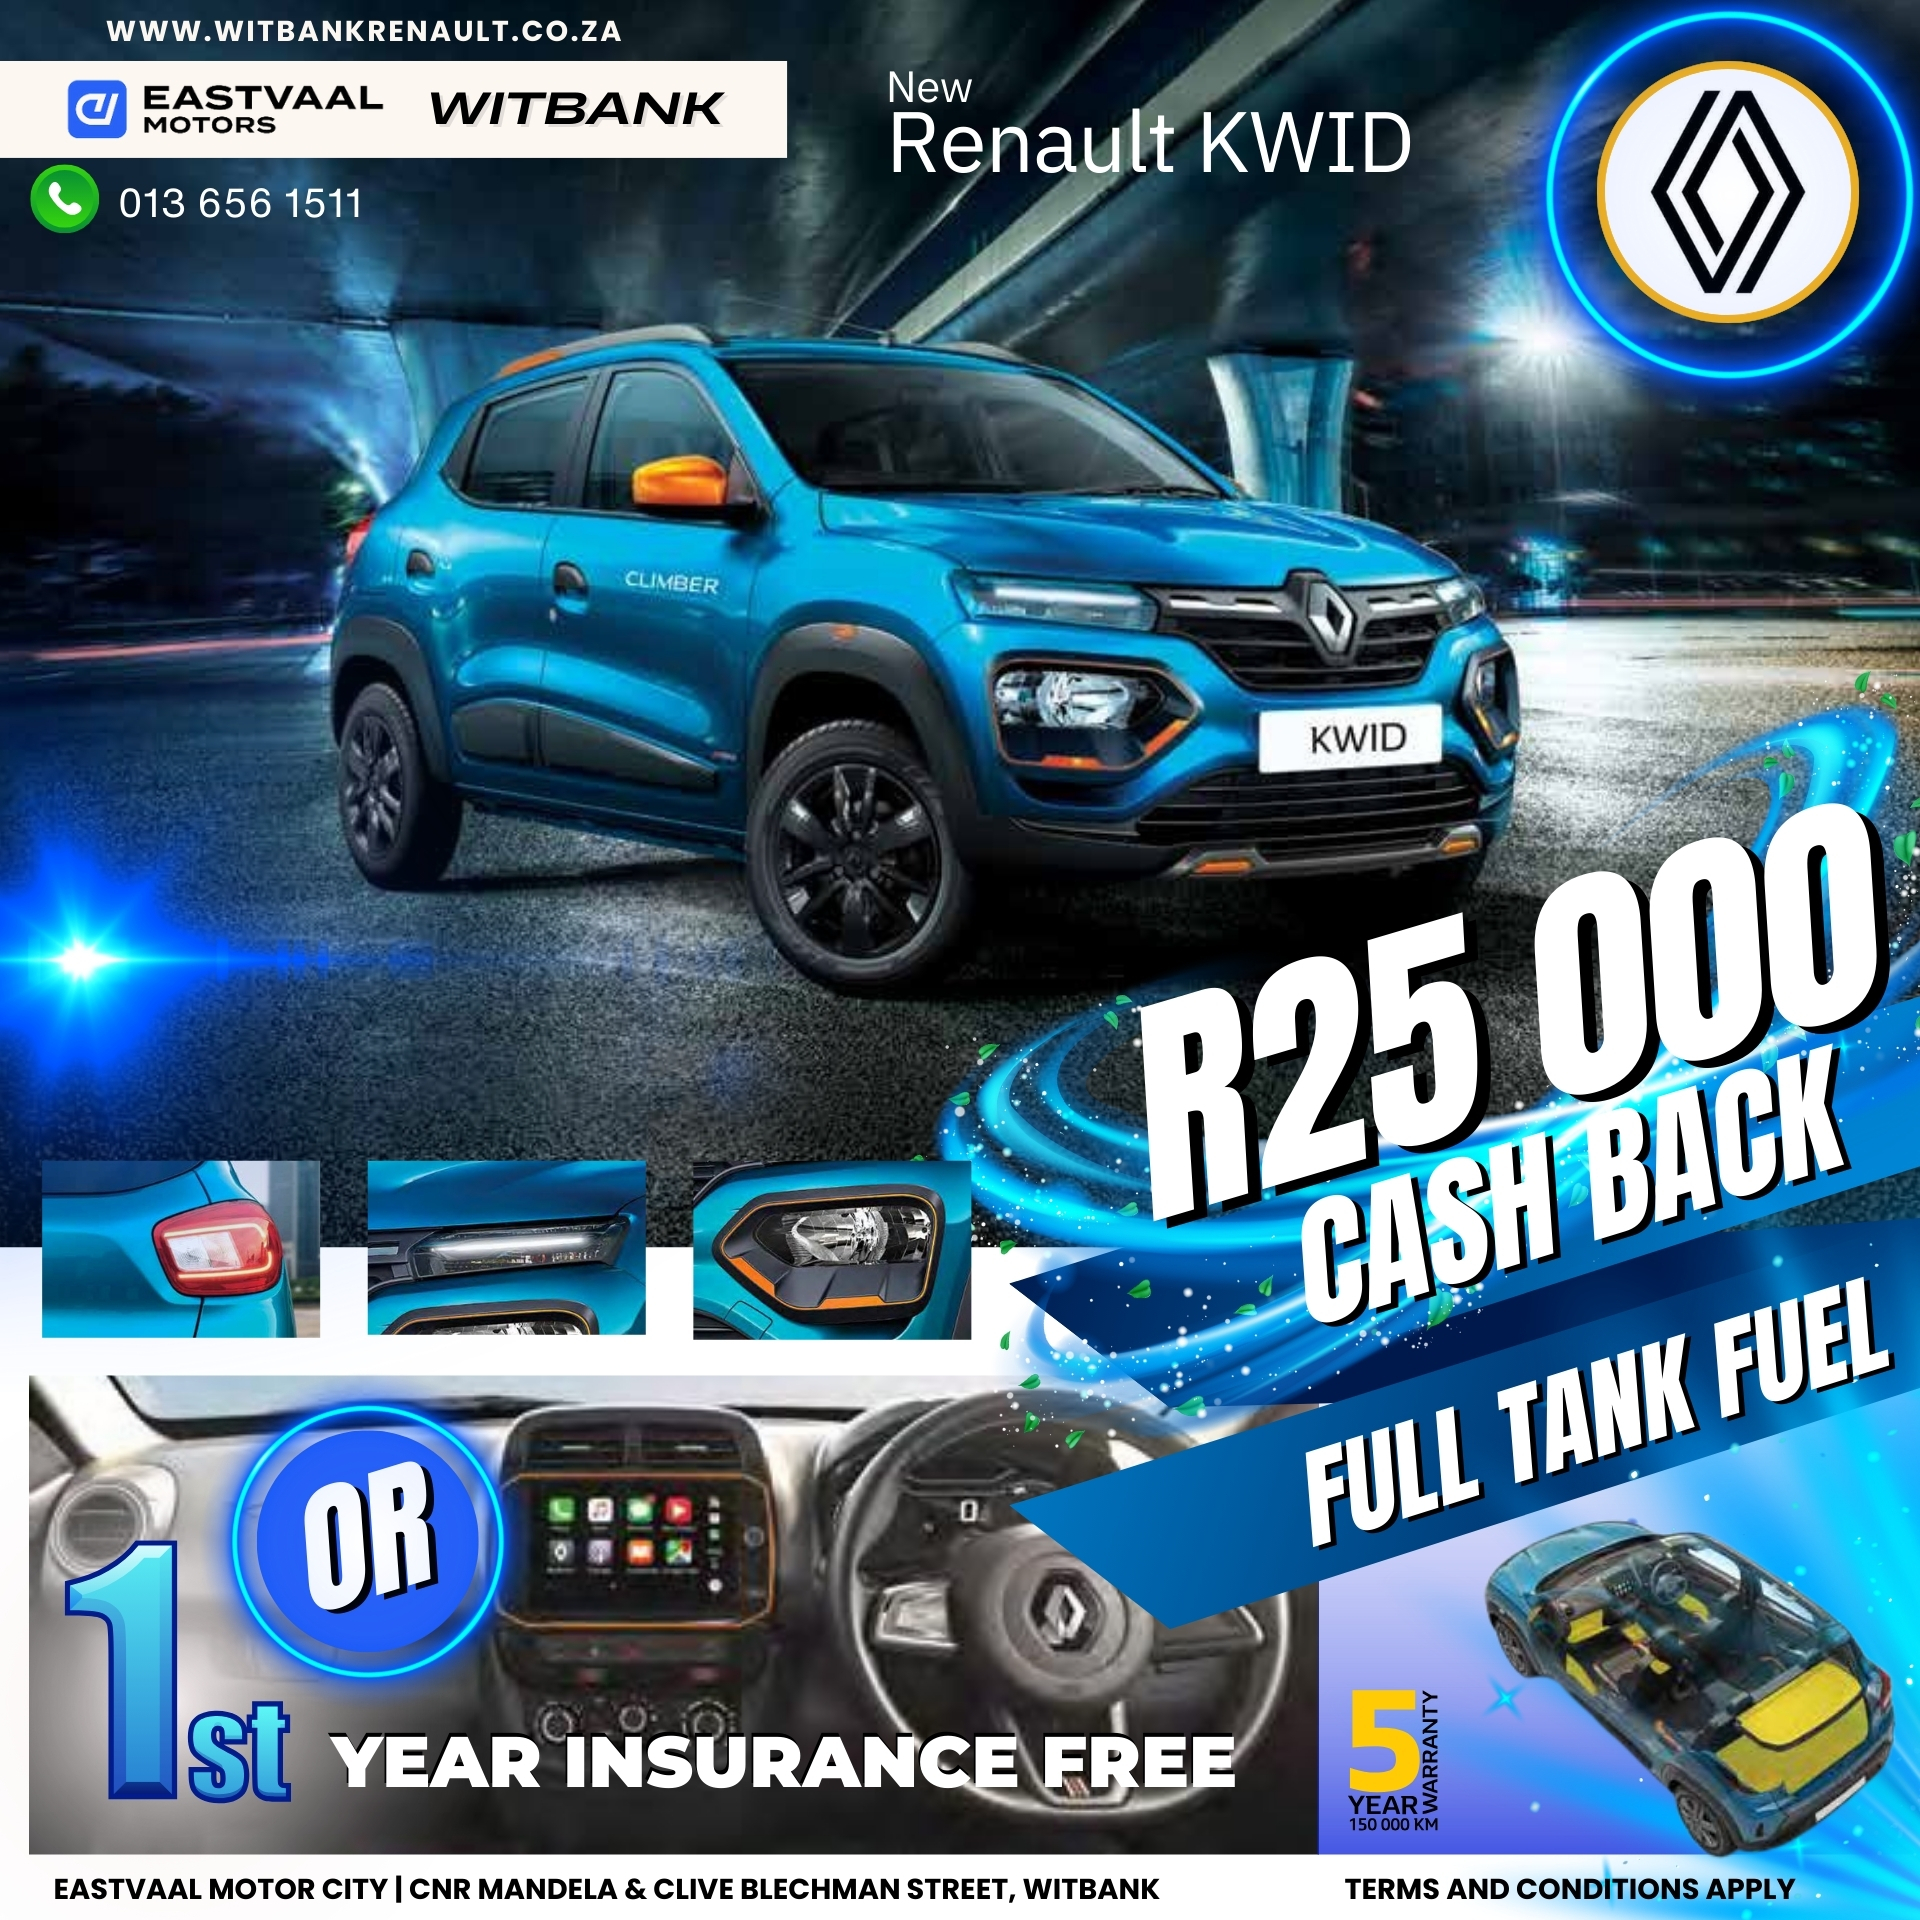 Renault Kwid image from 